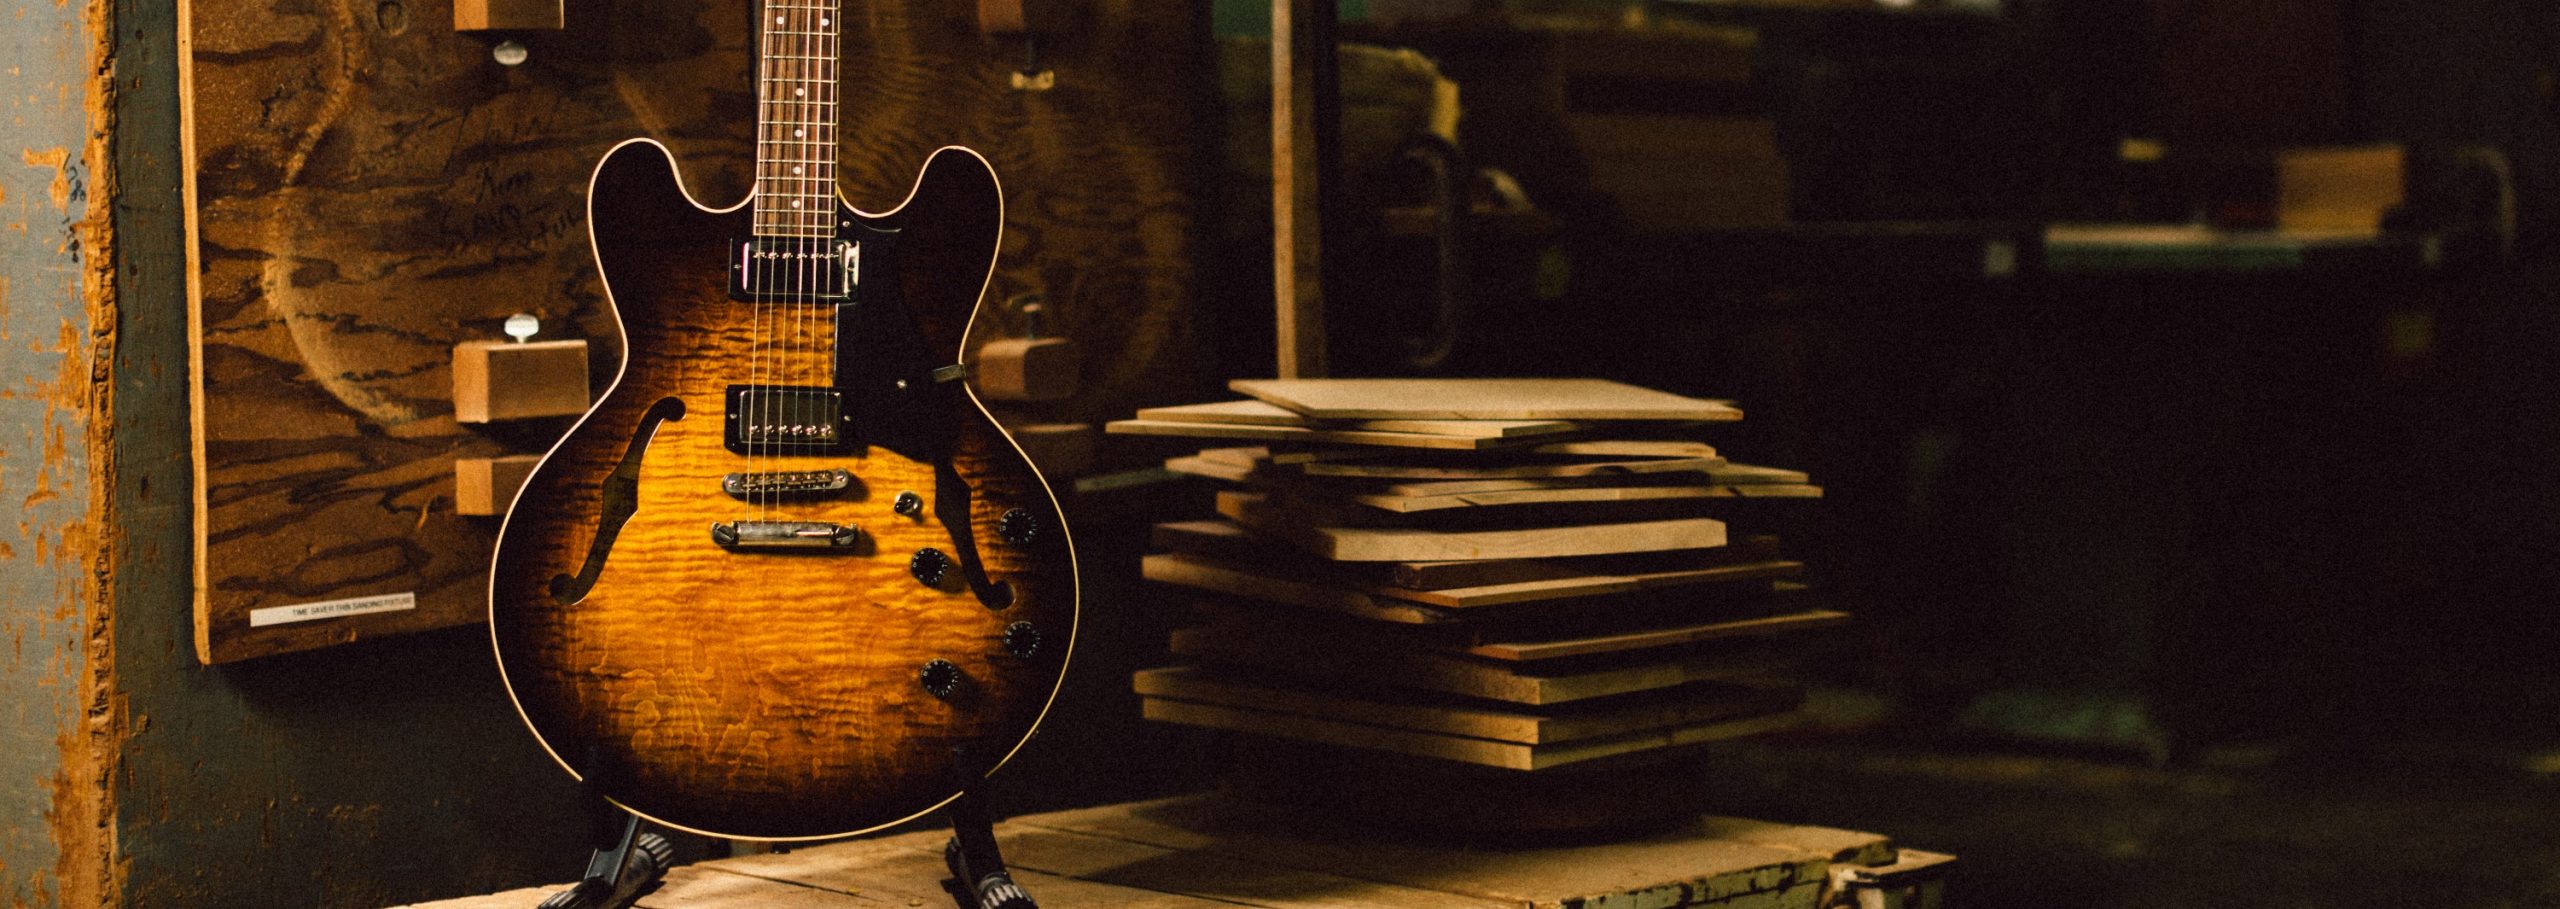 1985年、Gibsonカラマズー工場閉鎖を契機に生まれたHeritage Guitars。 74年頃より生産拠点をナッシュビルへと移転していたGibsonですが、ジム・デュロー氏を中心とした数人の従業員たちはカラマズーの工場と設備を買い受け、新たなギターブランド立ち上げに至りました。 古き良き伝統 […]